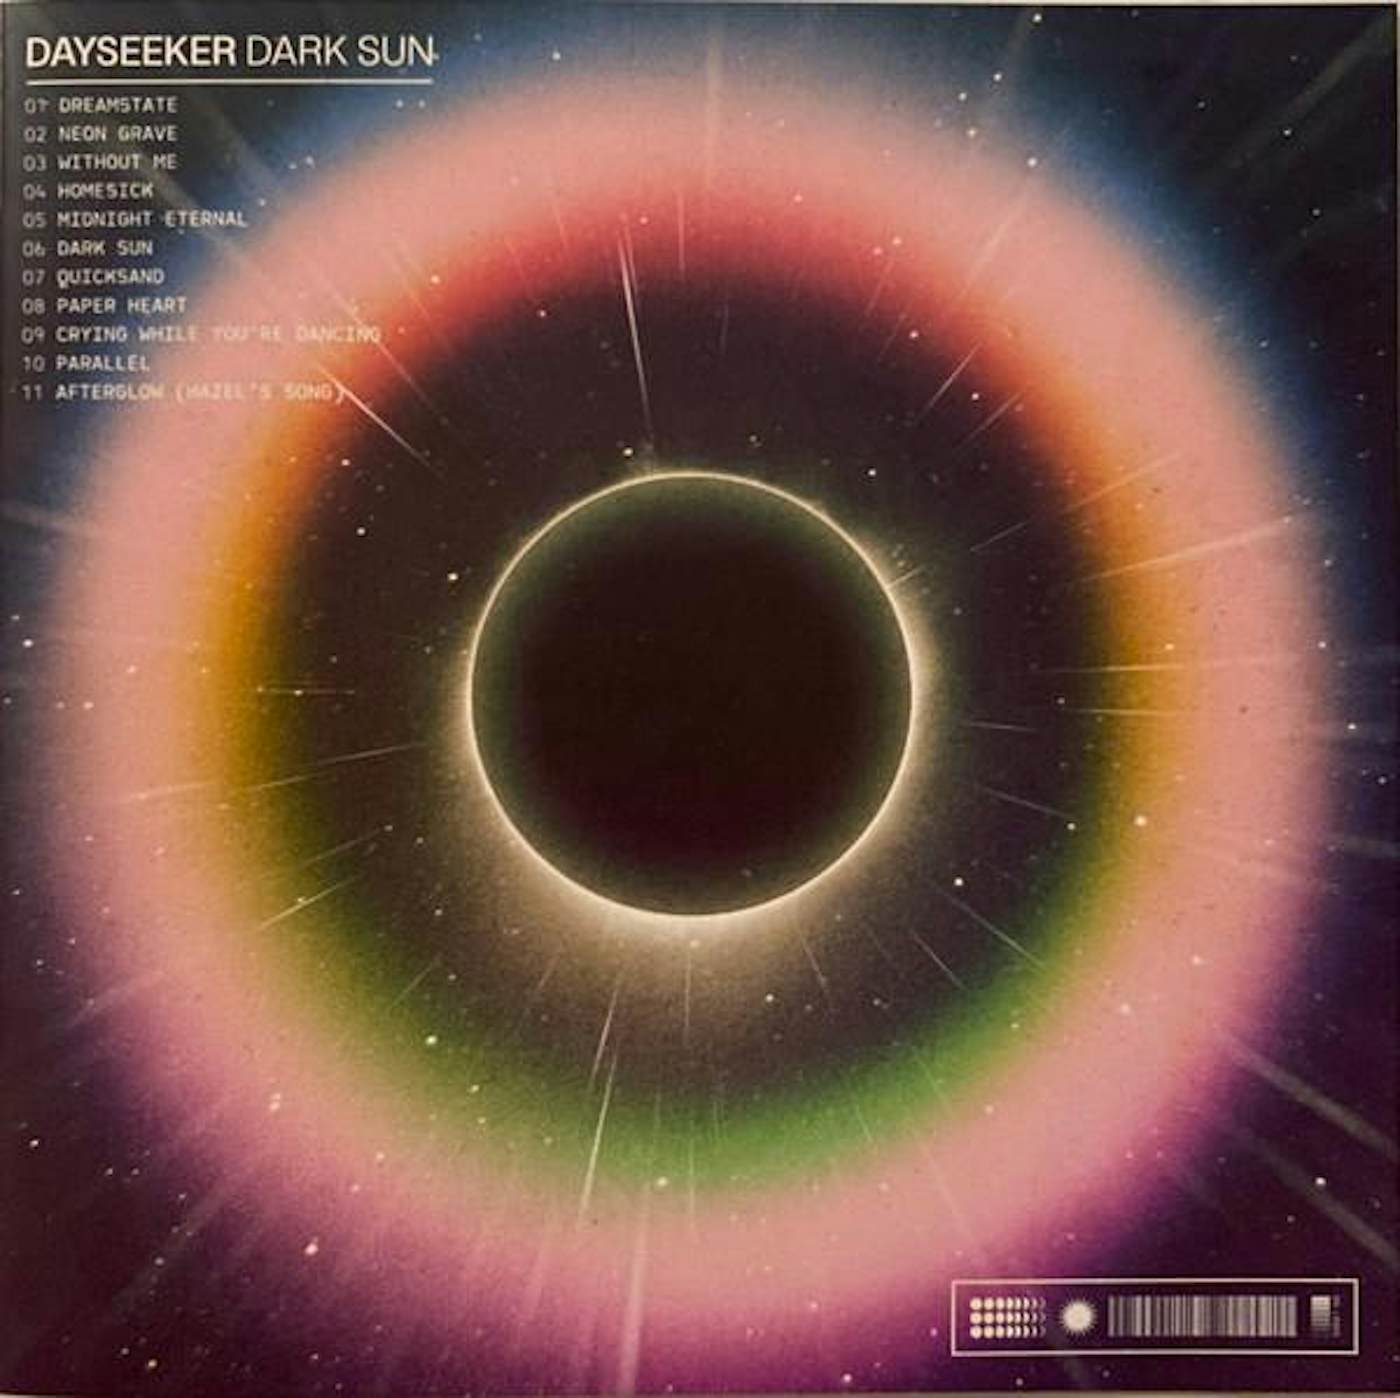 Dayseeker Dark Sun Vinyl Record